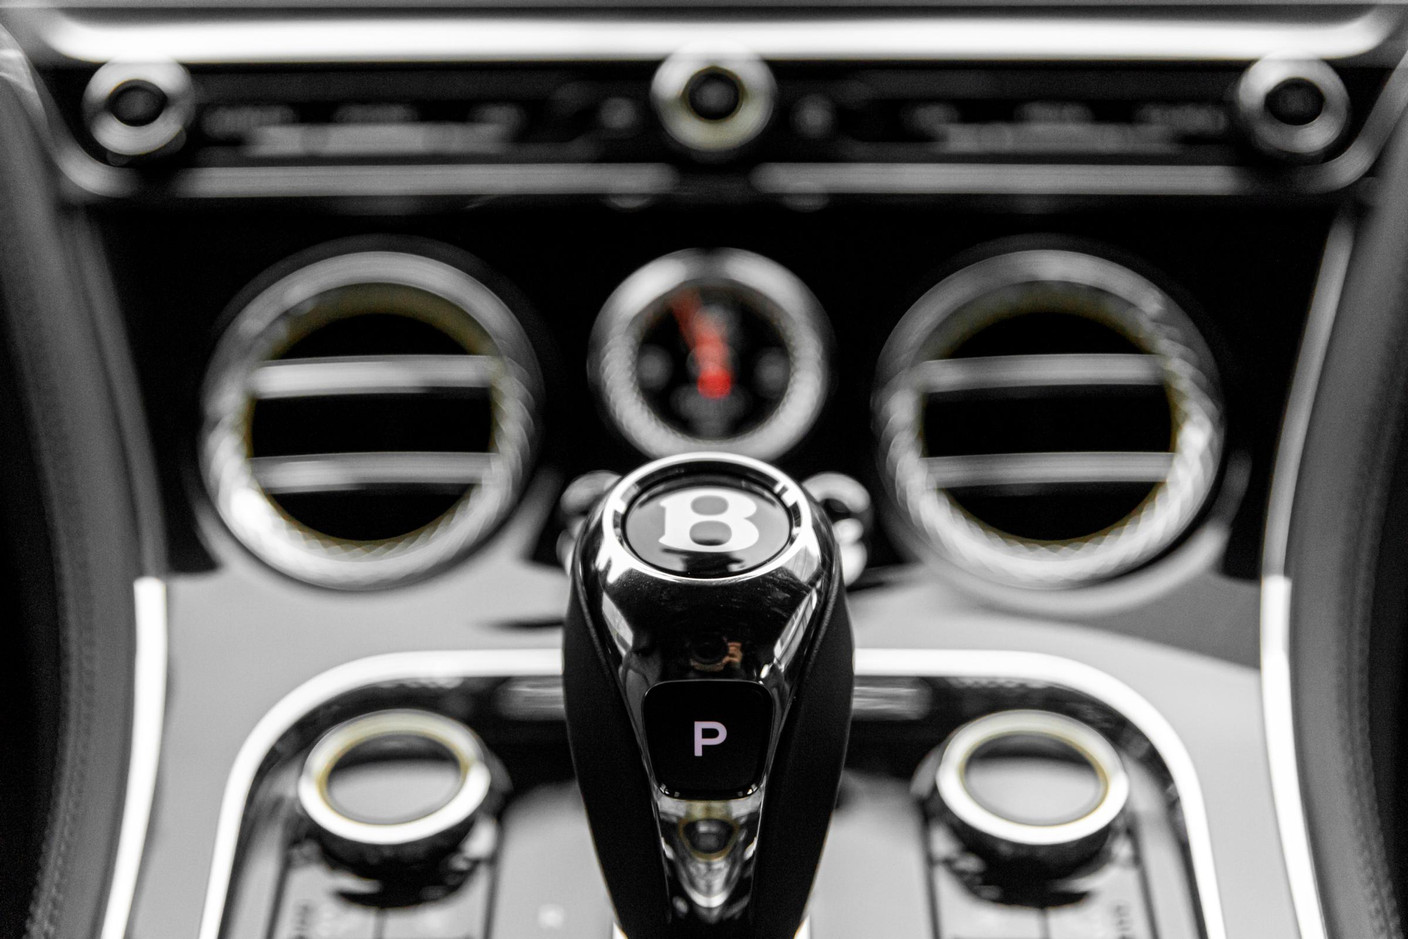 L’intérieur de cette Bentley concilie à merveille modernité et classicisme. (Photo: Patricia Pitsch / Maison Moderne)